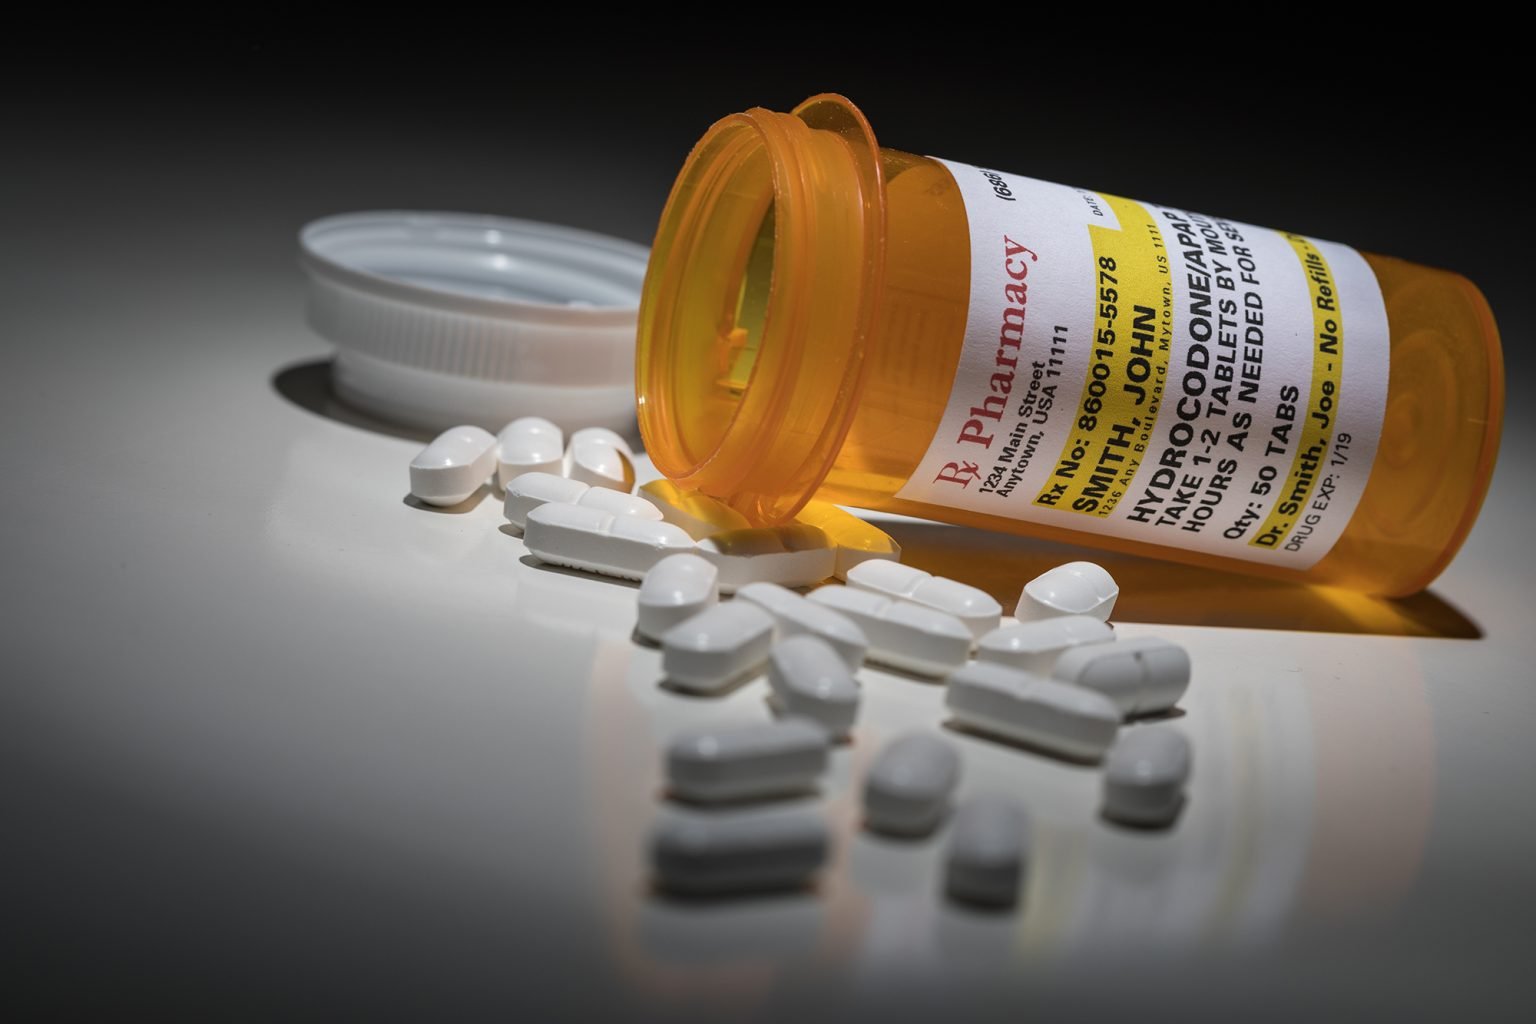 Hydrocodone Pills and Prescription Bottles with Non Proprietary Label